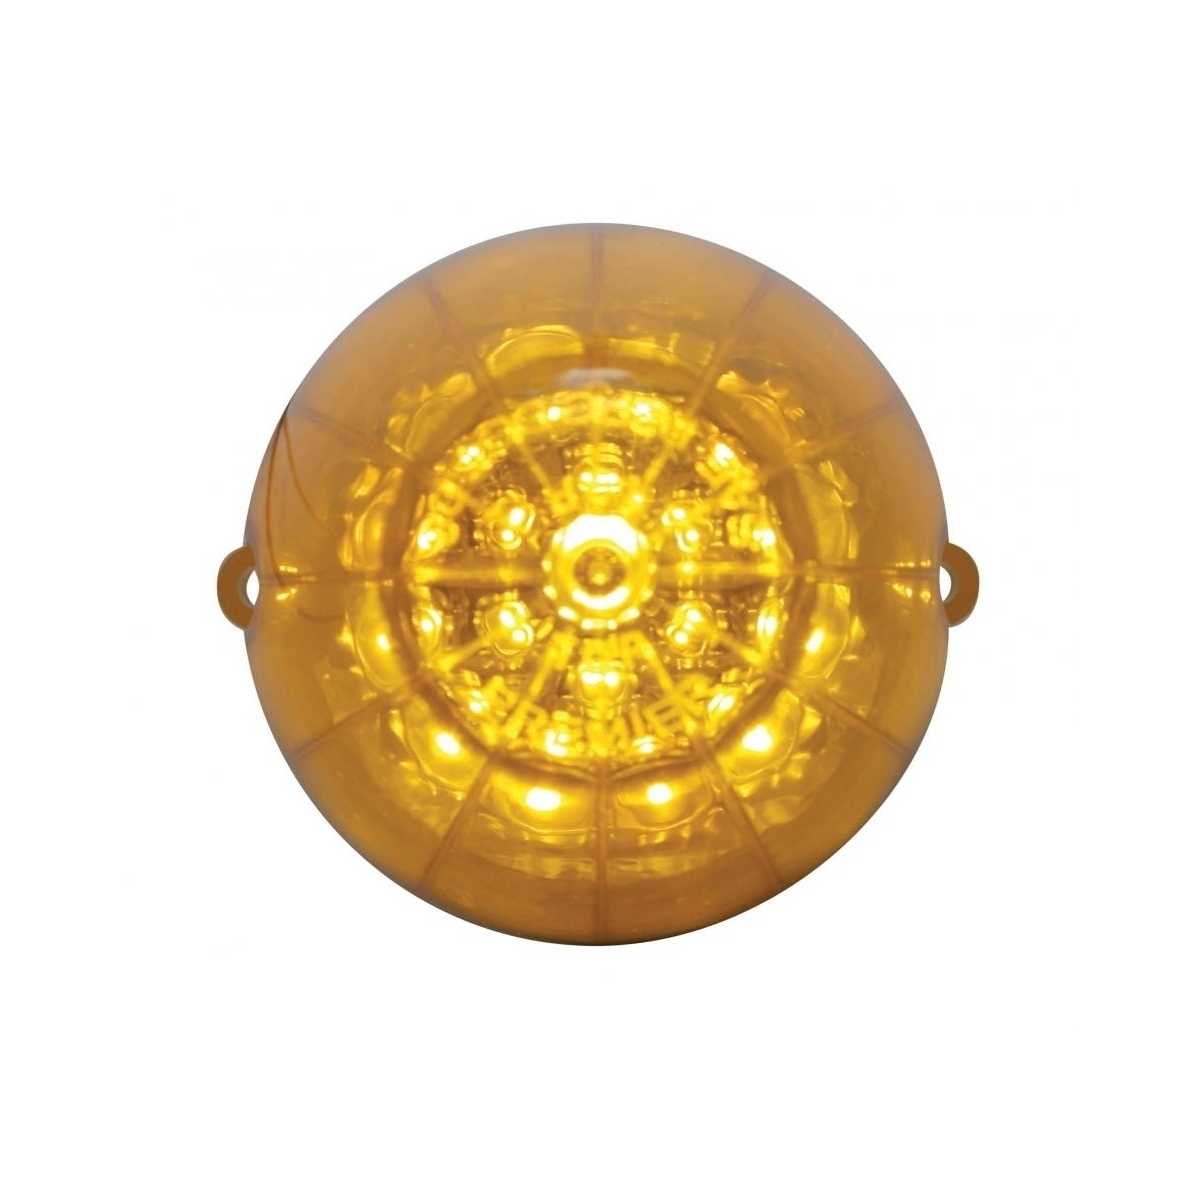 Peterbilt Front Air Cleaner Bracket w/ Lights & Visors - Amber LED/Amber Lens